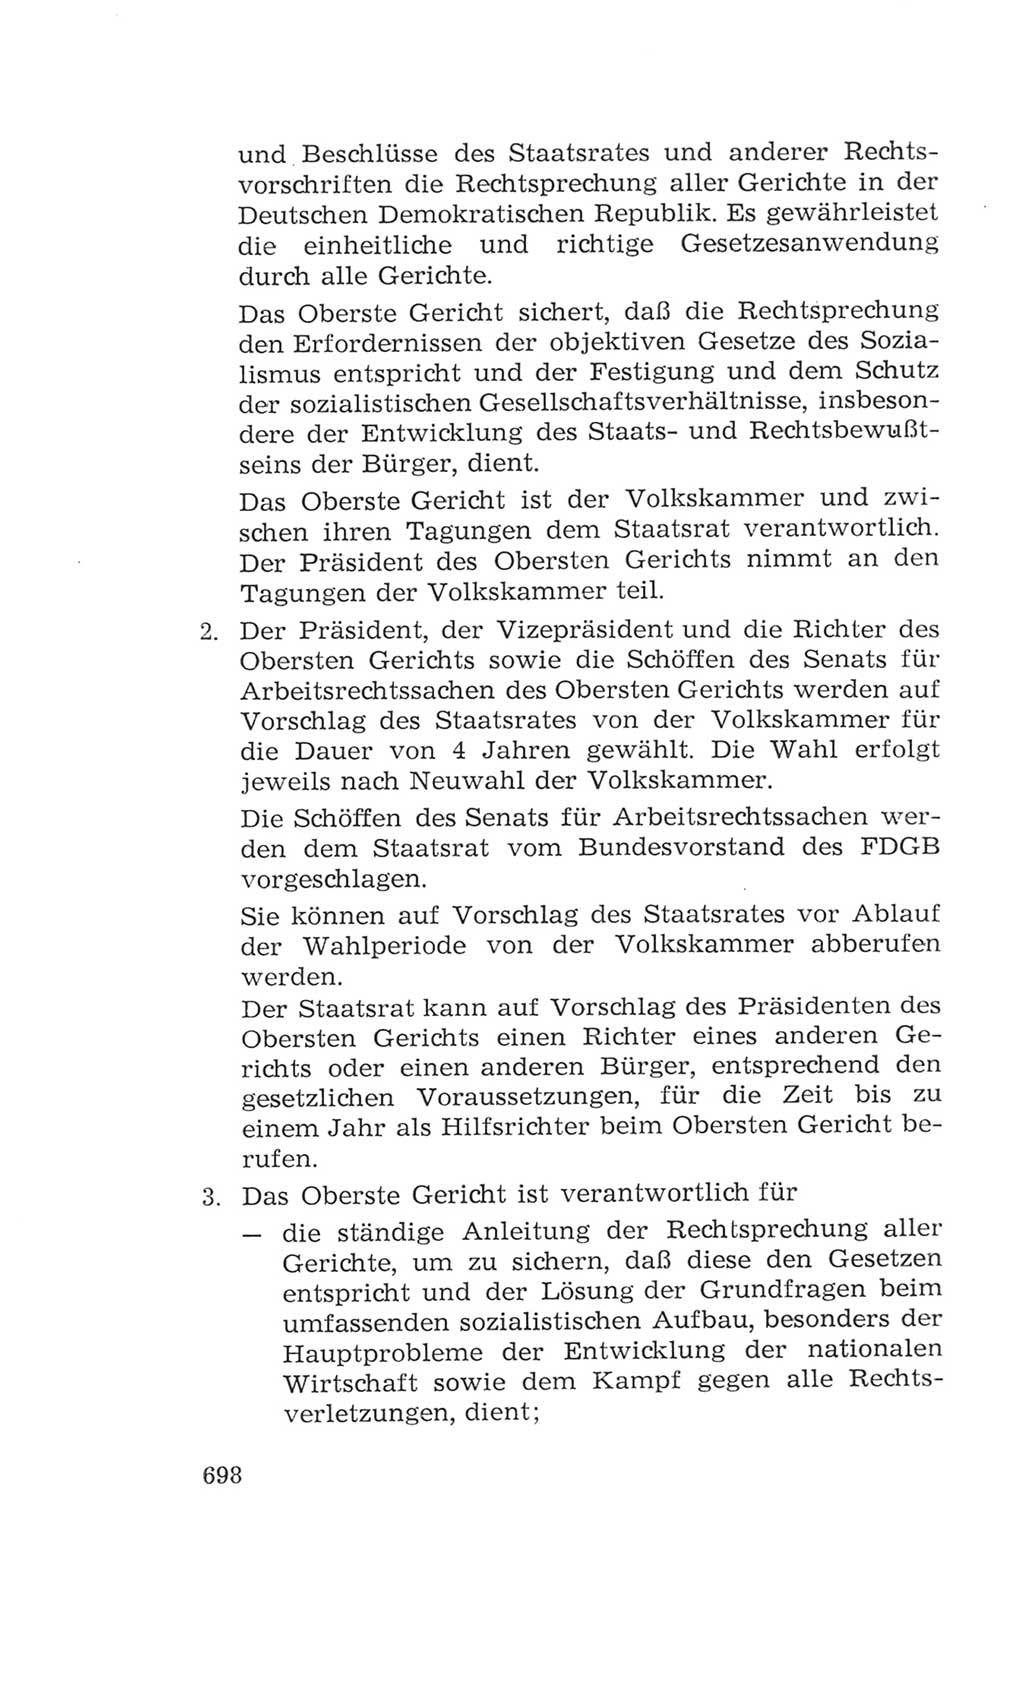 Volkskammer (VK) der Deutschen Demokratischen Republik (DDR), 4. Wahlperiode 1963-1967, Seite 698 (VK. DDR 4. WP. 1963-1967, S. 698)